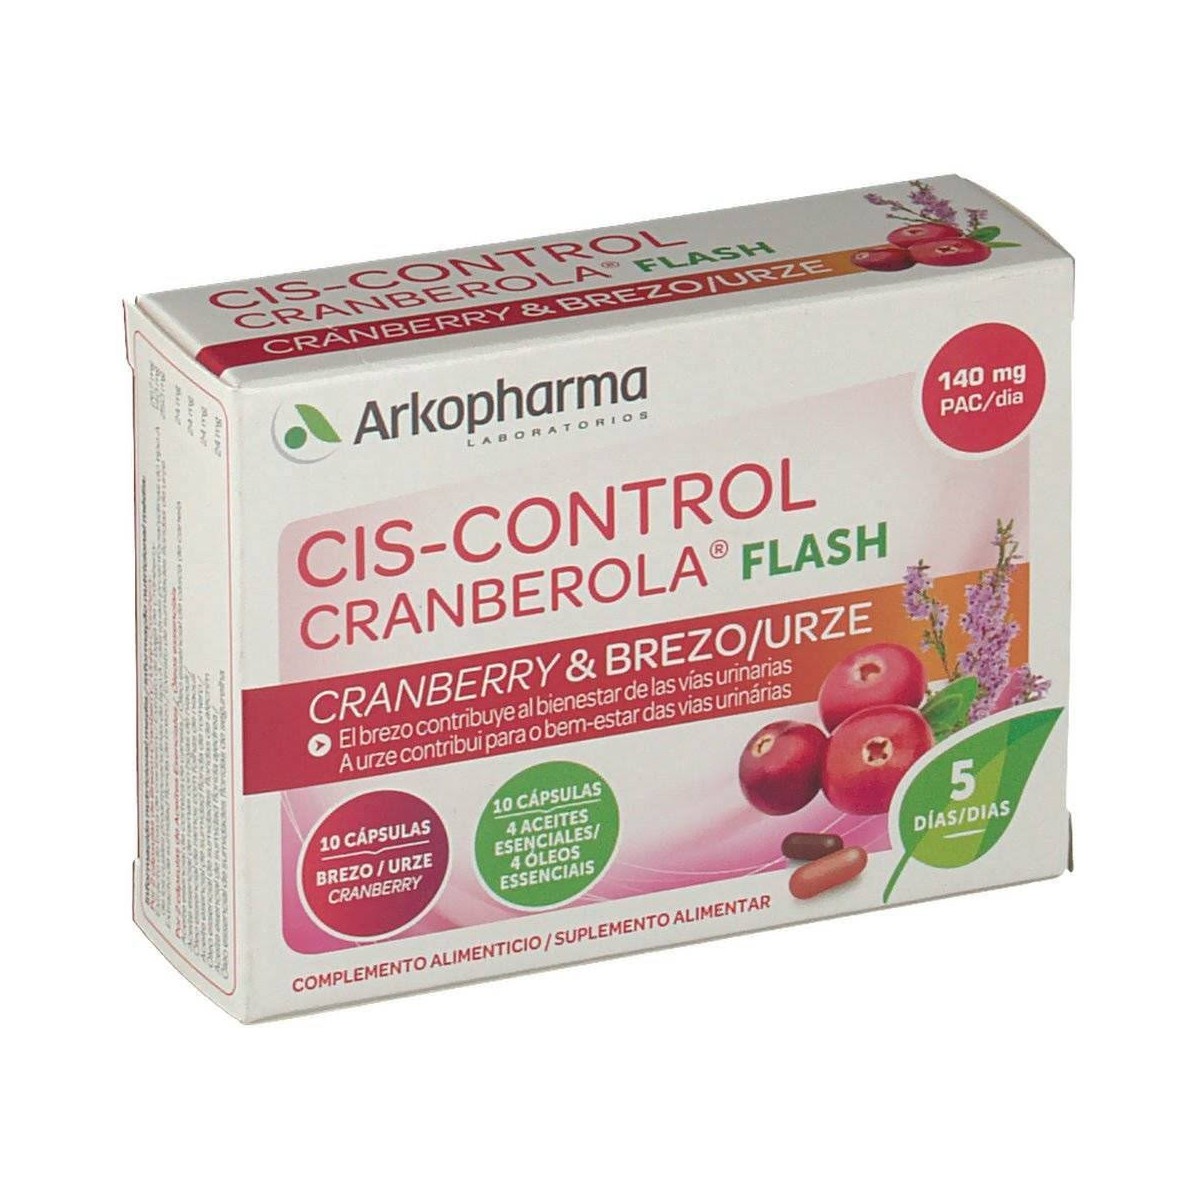 arkopharma-cis-control-cranberola-flash